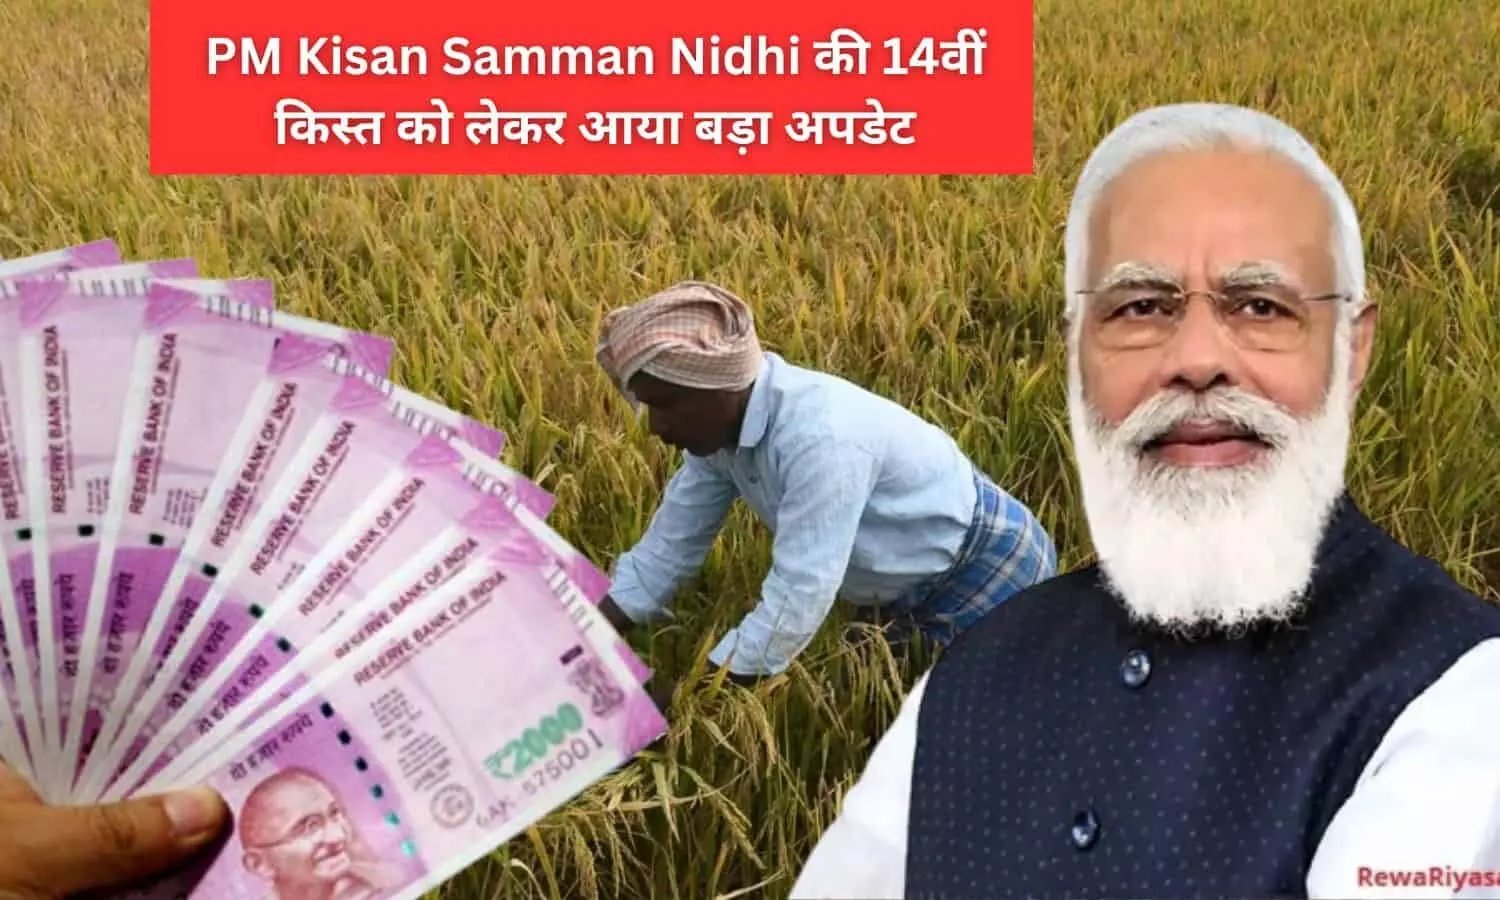 PM Kisan Samman Nidhi 2023: आने वाली है पीएम किसान सम्मान निधि की 14वीं किस्त, कुछ ही दिन बचे हैं शेष, जाने कब जारी होगी राशि